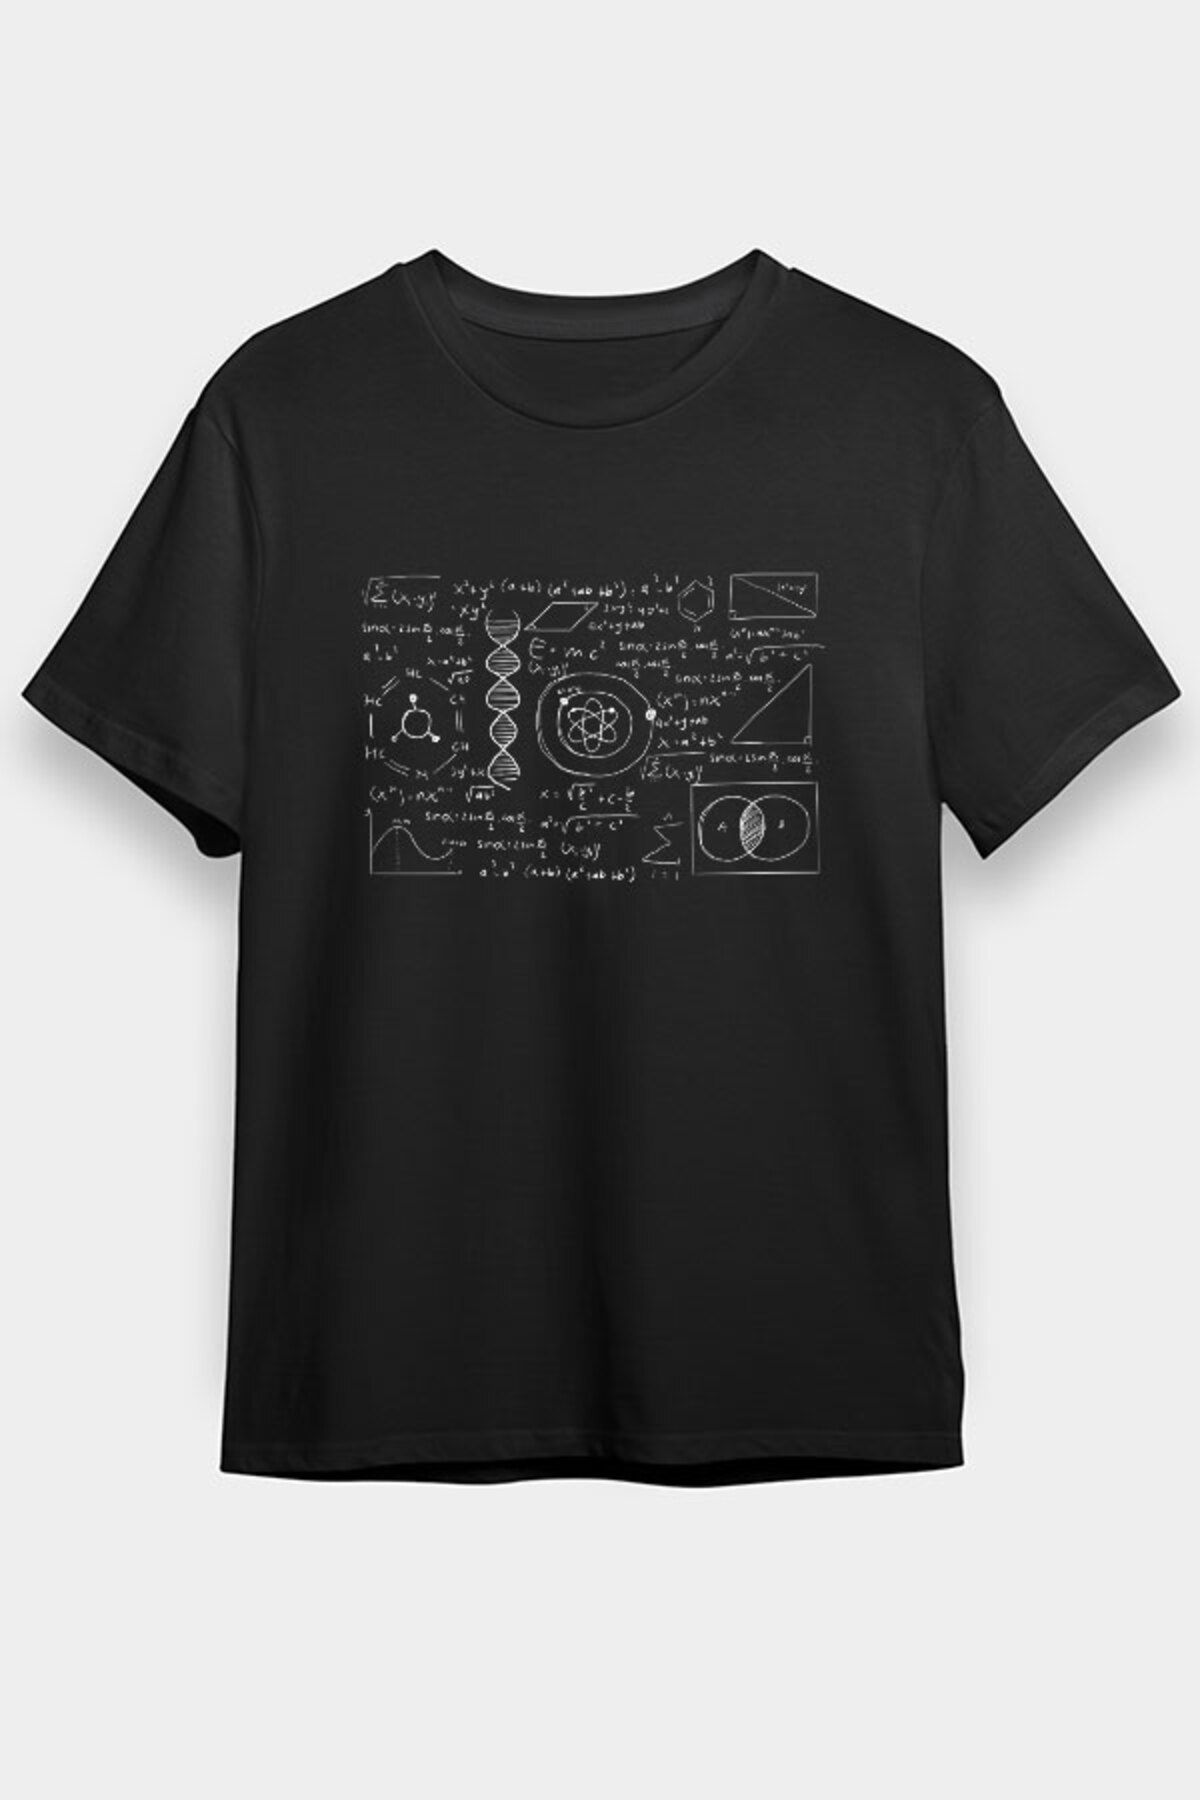 Darkhane Kimya Fizik Matematik Denklemleri Siyah Unisex Tişört T-Shirt